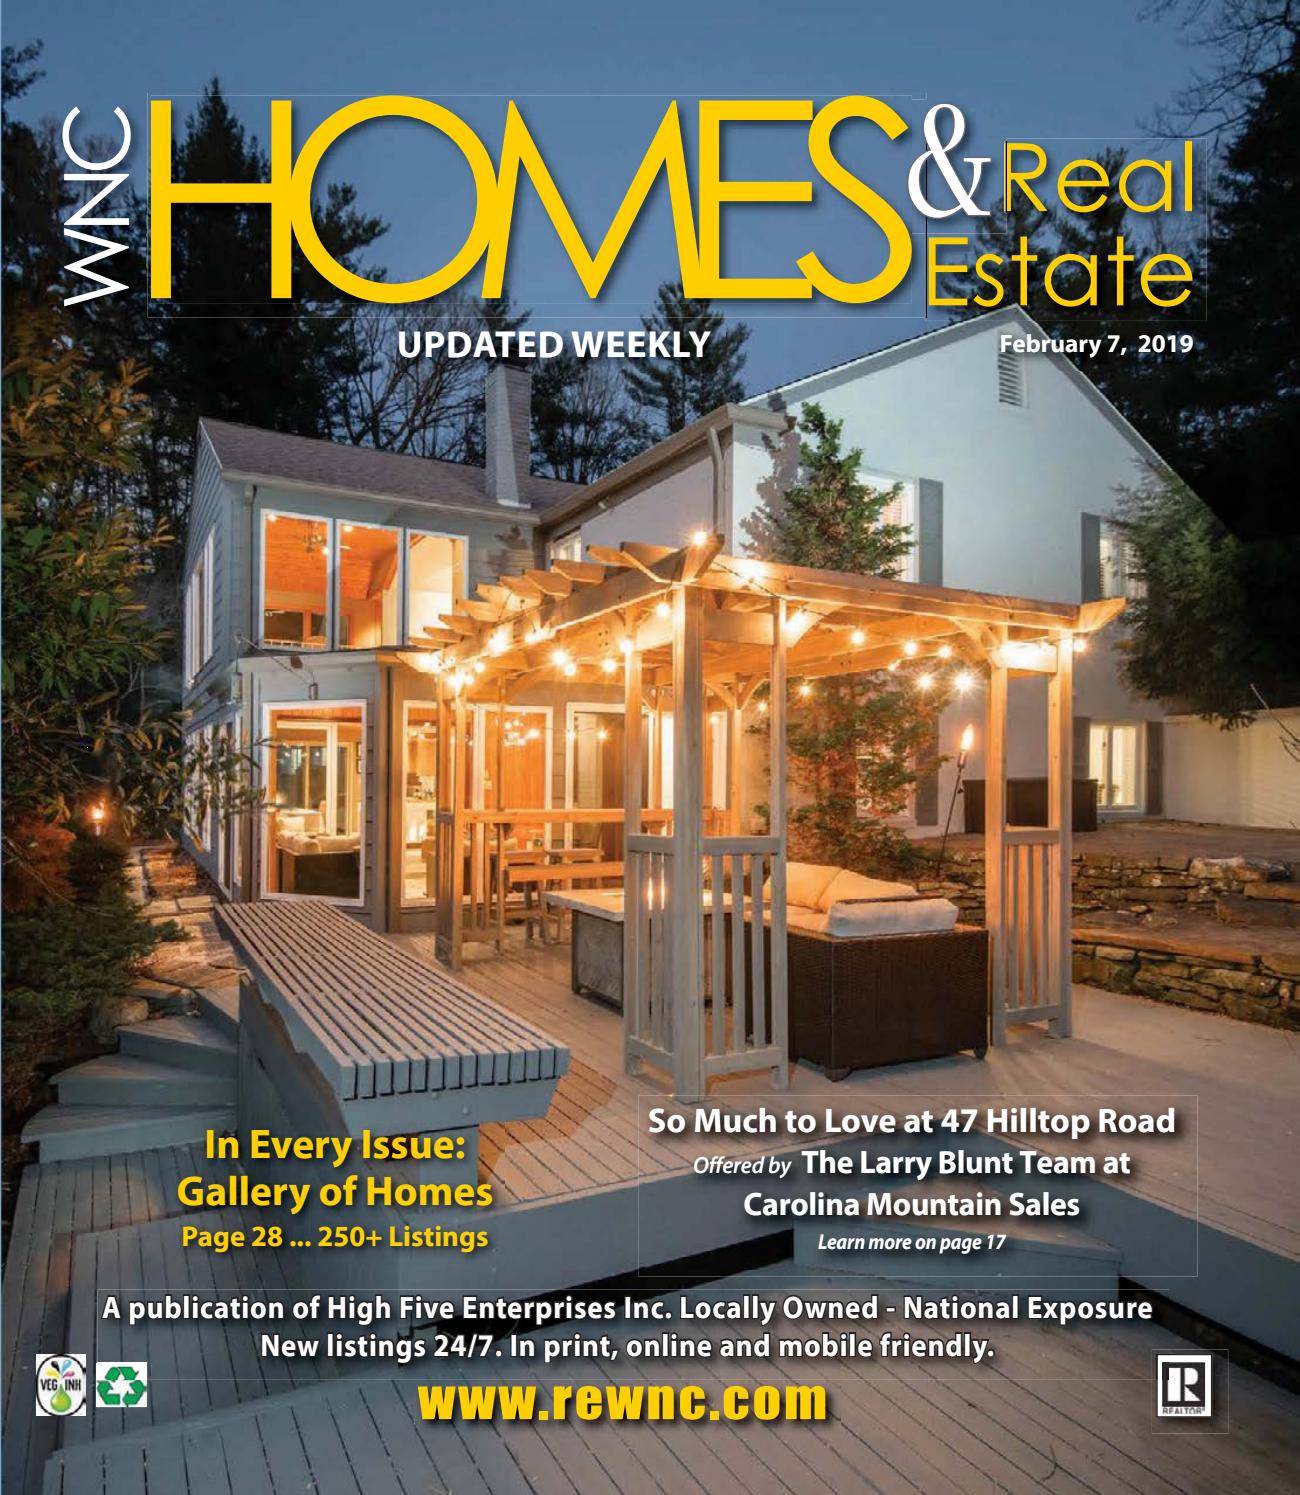 Subway Herringbone Inspirational Vol 30 February 2 by Wnc Homes & Real Estate issuu